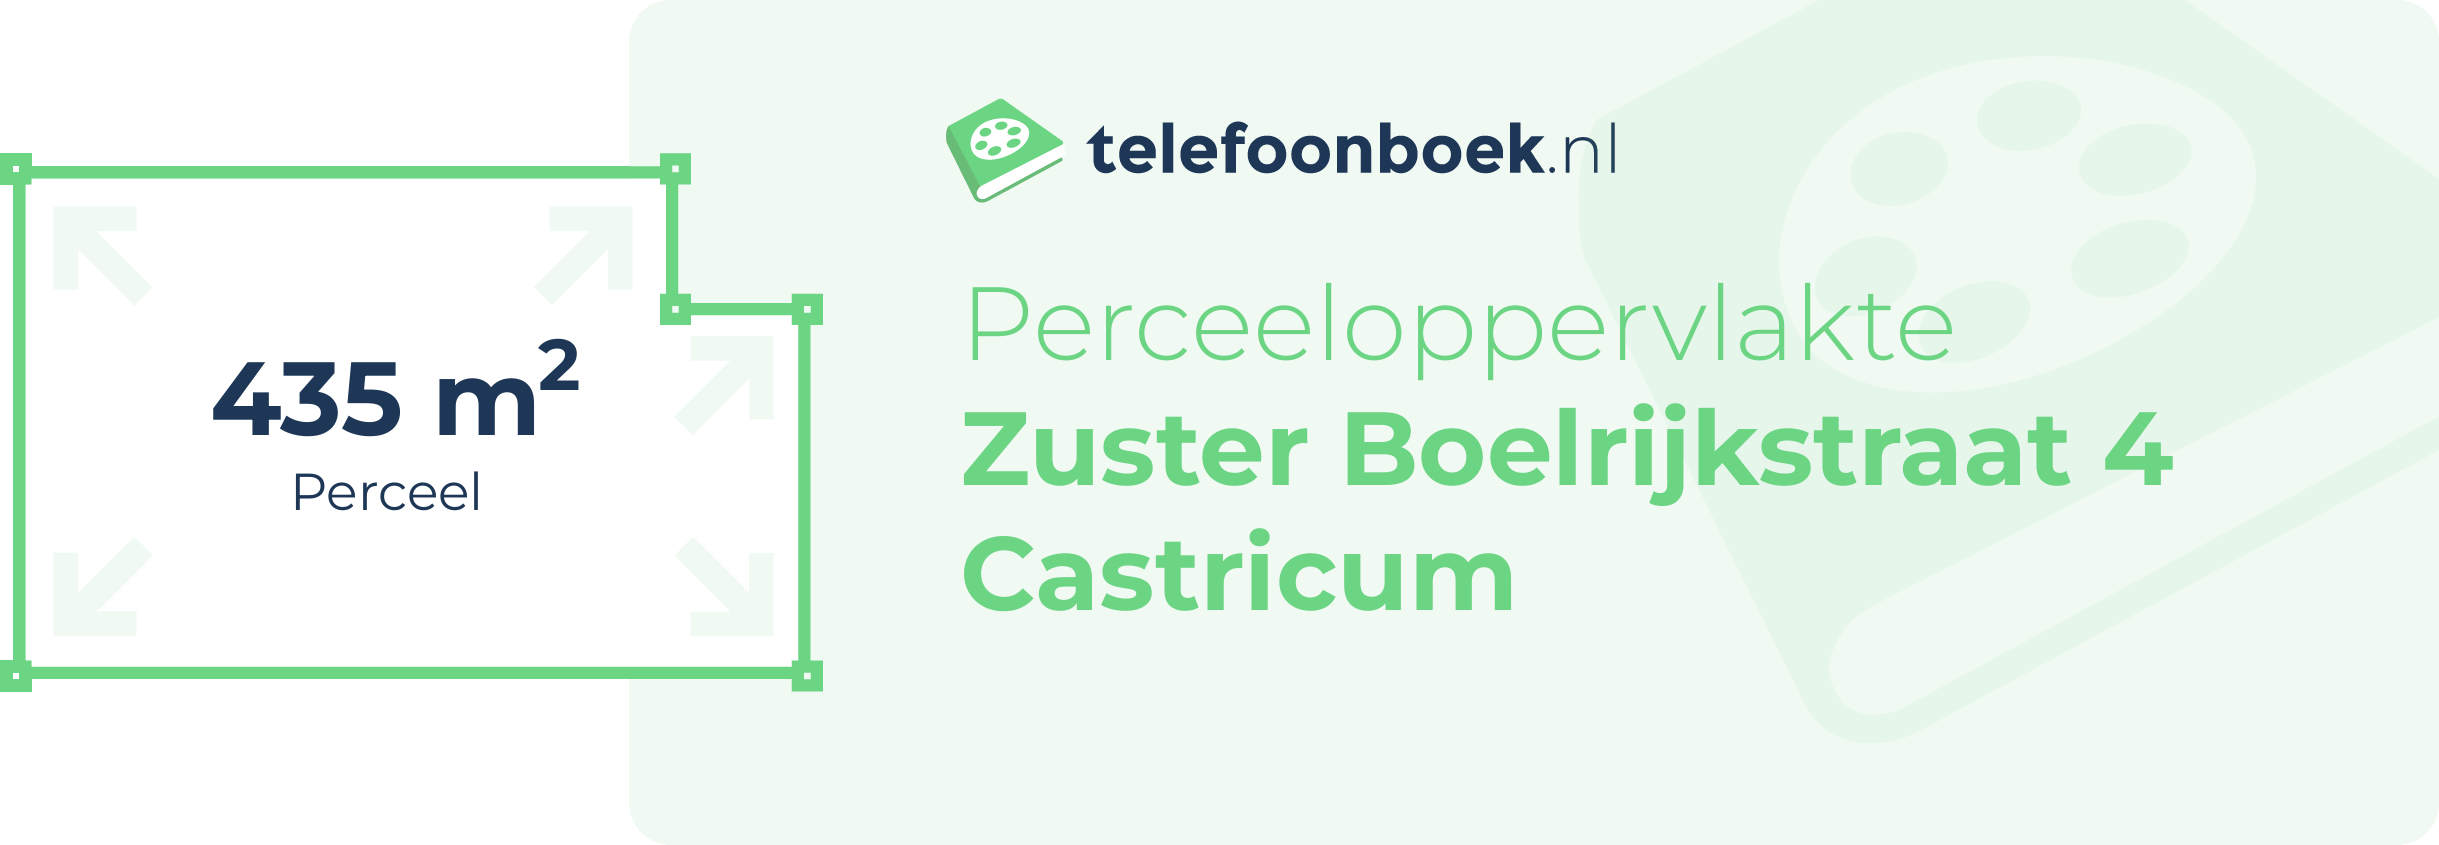 Perceeloppervlakte Zuster Boelrijkstraat 4 Castricum